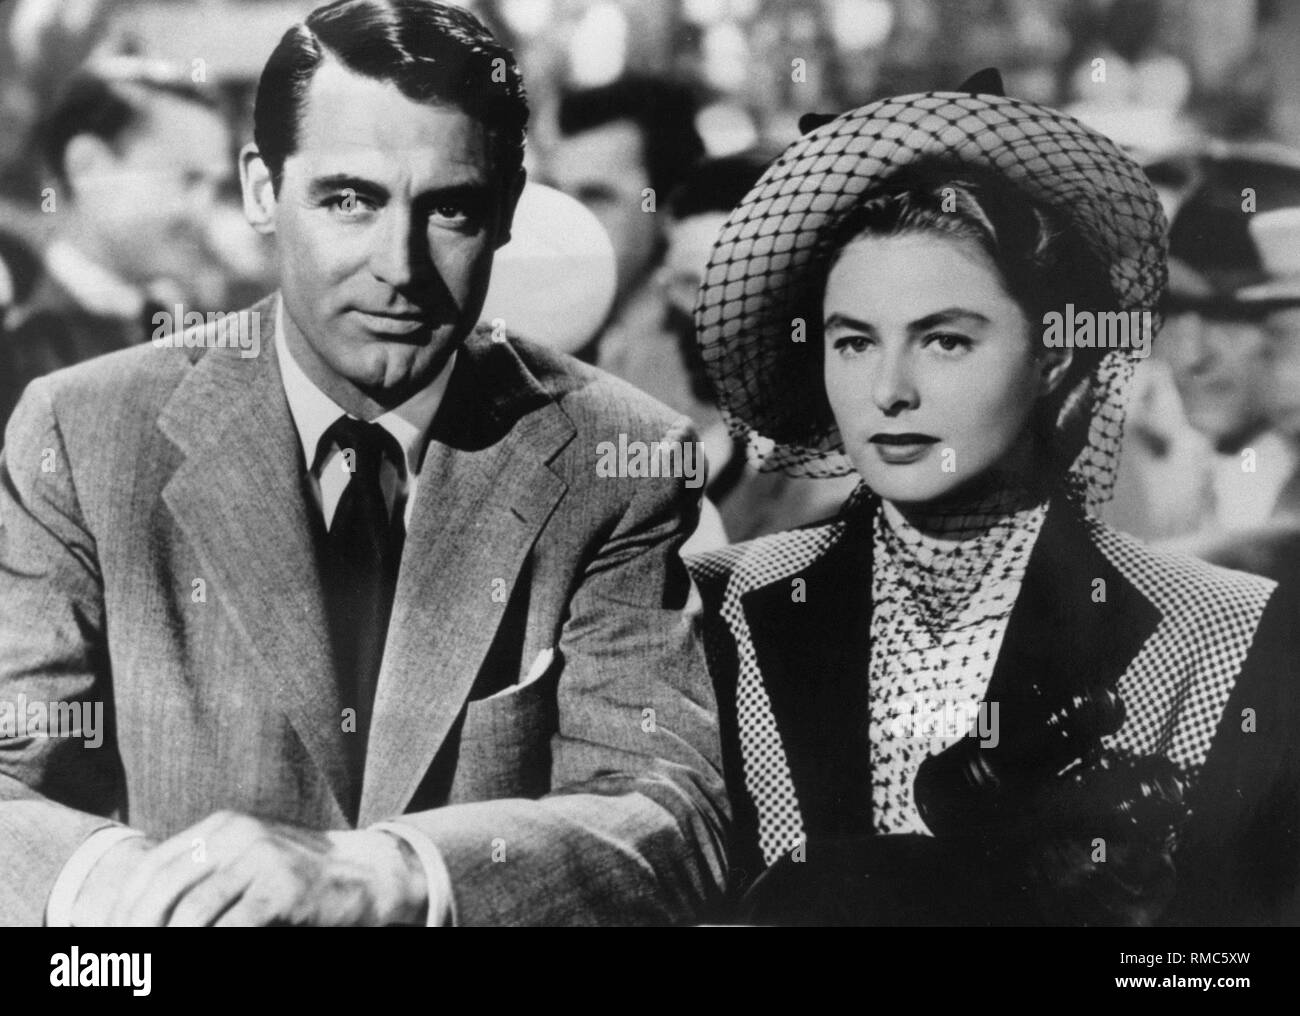 Il 29 agosto 2002 era il ventesimo anniversario della morte di attrice Ingrid Bergman (foto: con Cary Grant). Nato a Stoccolma, l'attrice è diventato noto per film come "Casablanca" o "Per chi suona la campana". Foto Stock